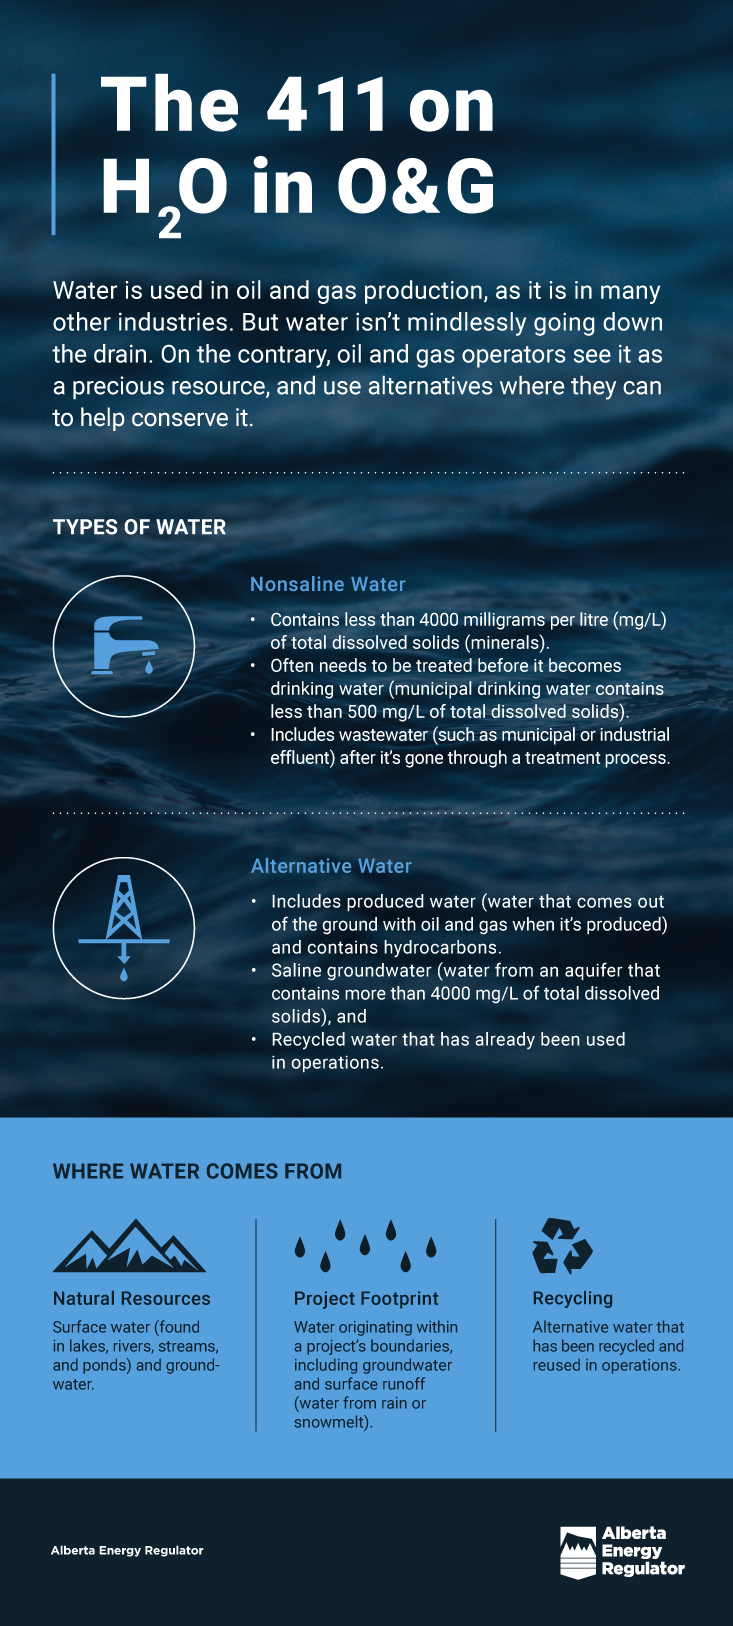 The 411 H2O O&G infographic